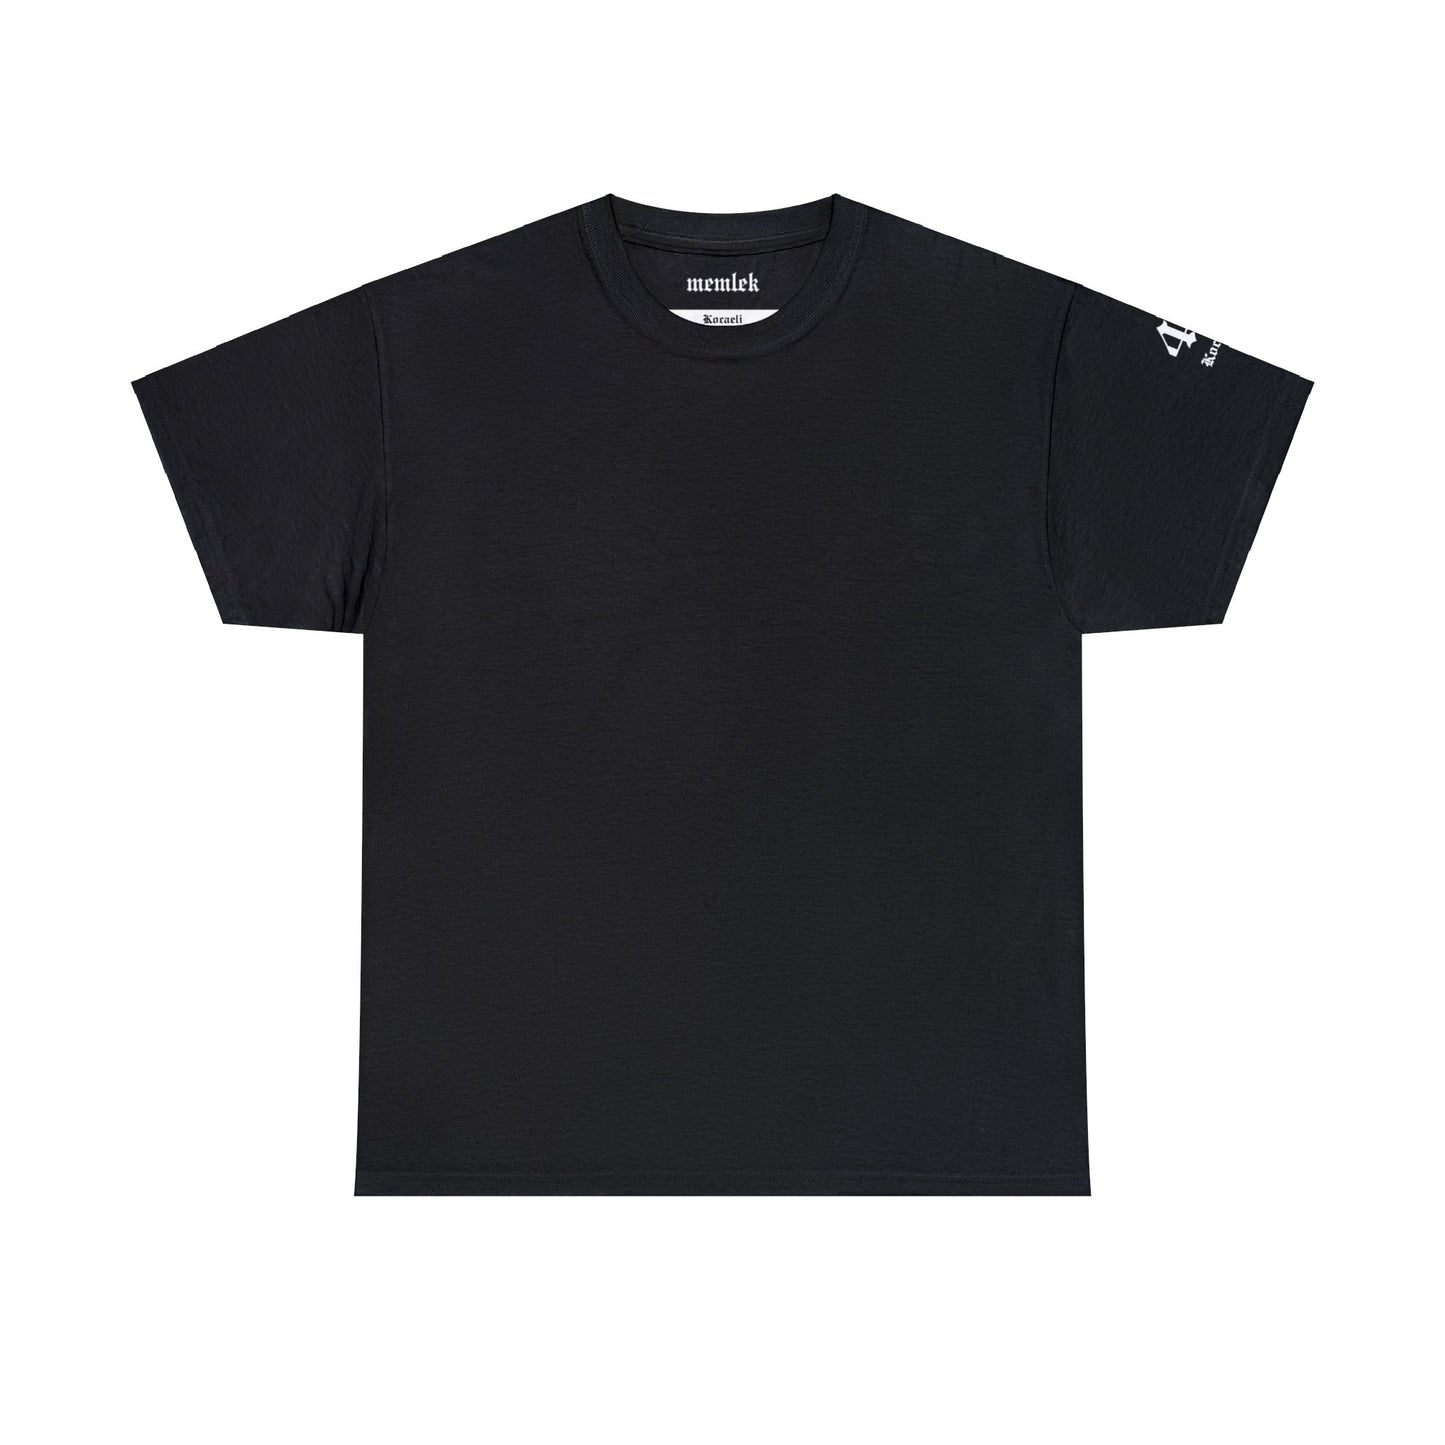 İlçem - 41 Kocaeli - T-Shirt - Back Print - Black